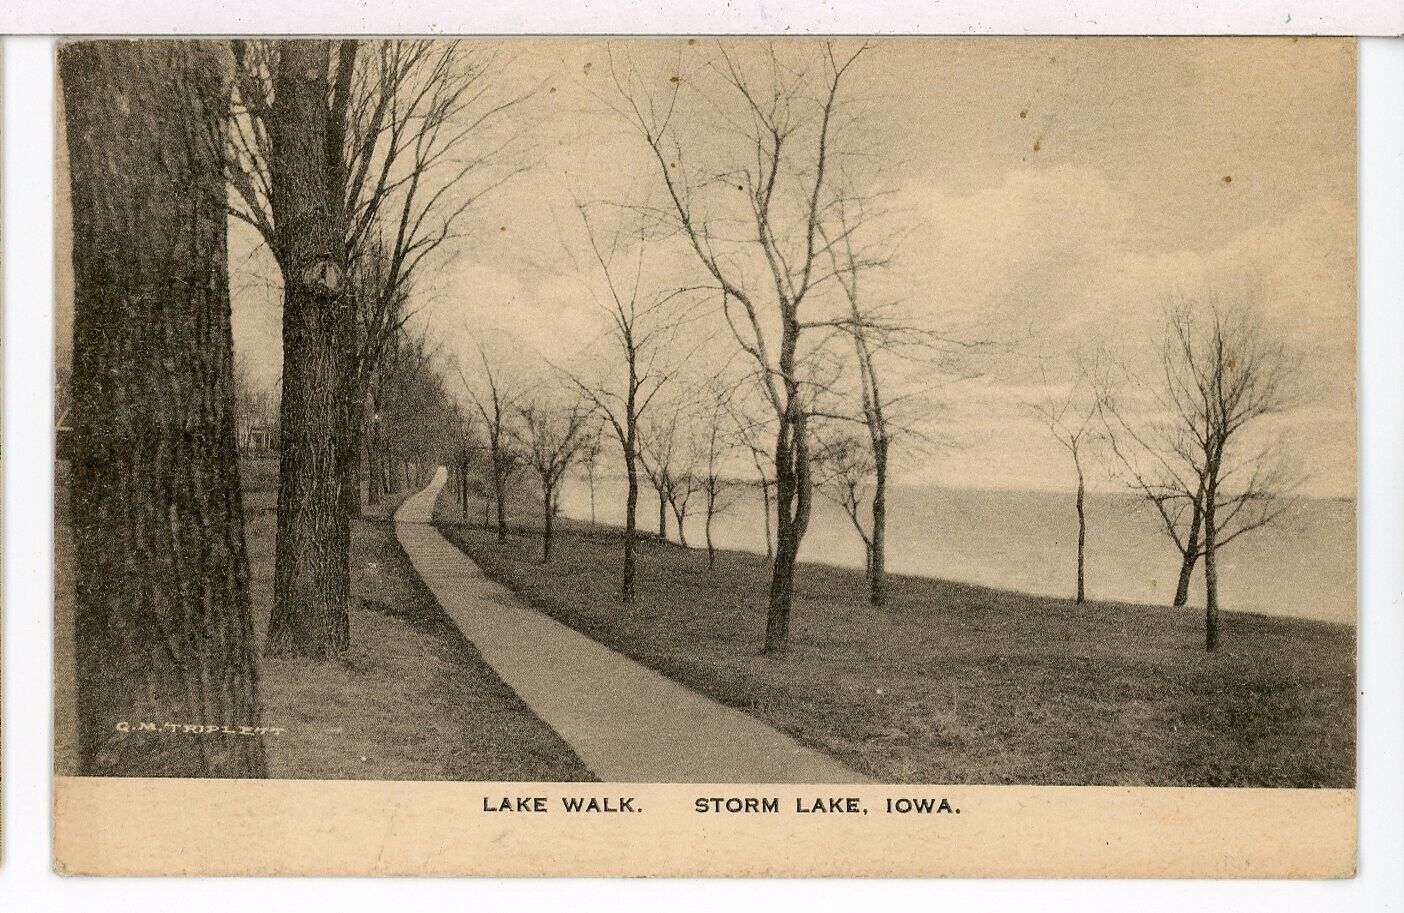 Lake Walk along Storm Lake 1907 - 1915 Storm Lake Iowa Postcard